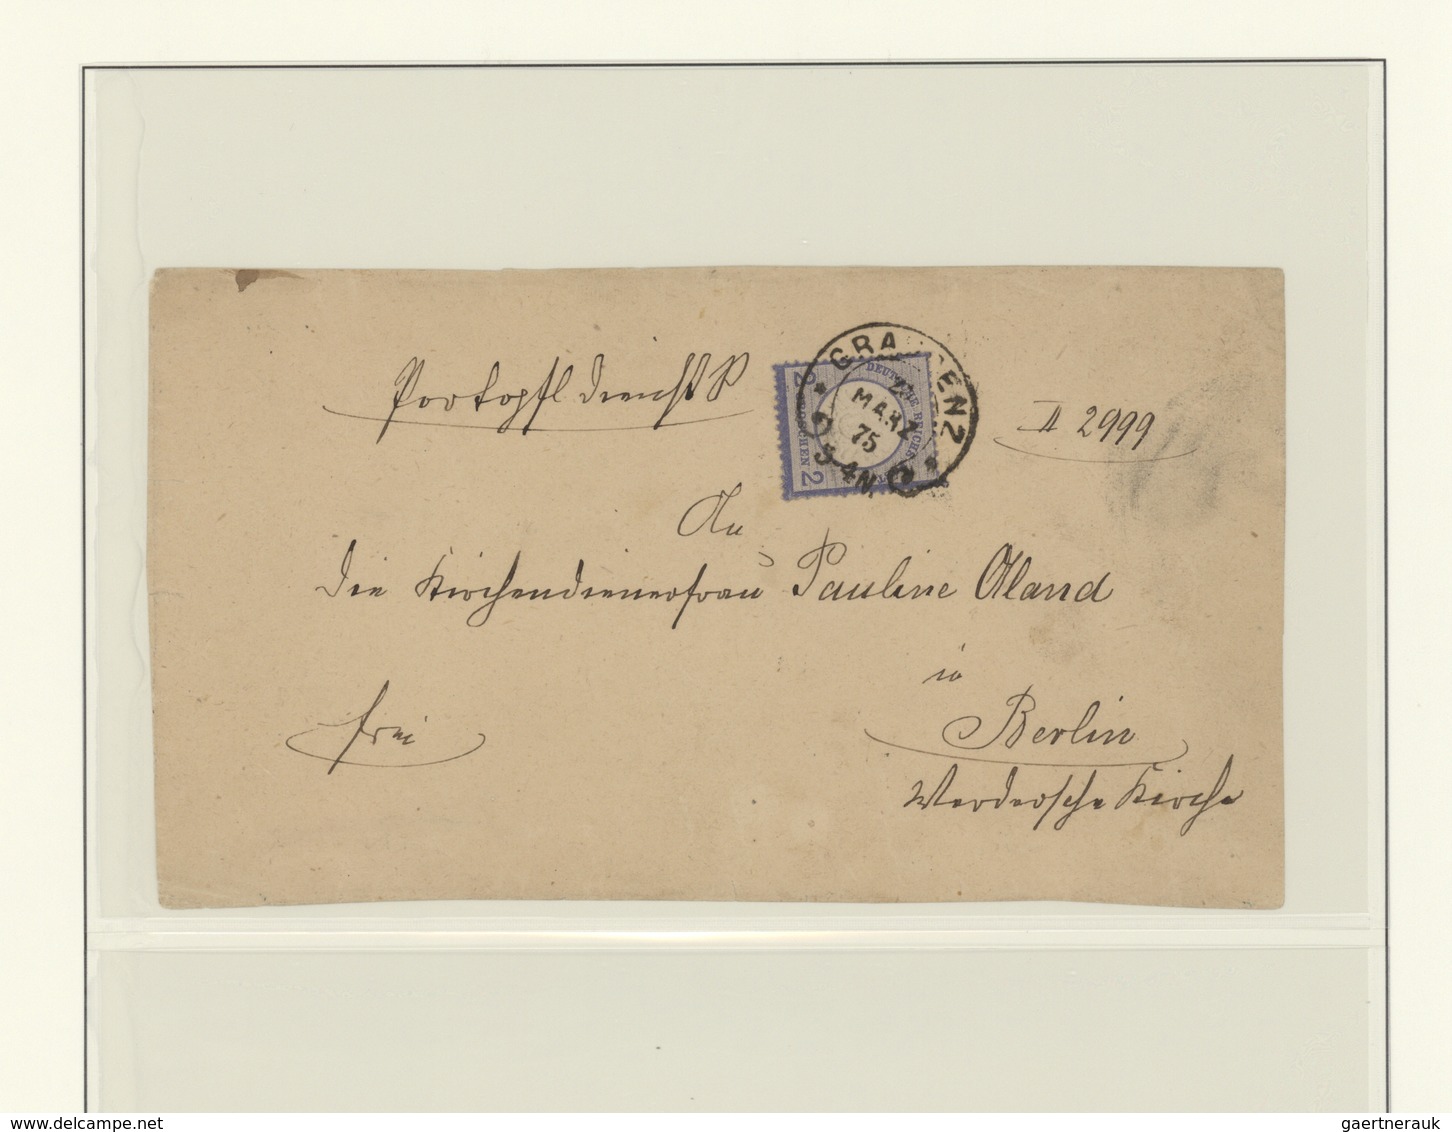 Deutsches Reich - Hufeisenstempel: 1872/80, Umfangreiche Brustschild-Spezialsammlung HUFEISENSTEMPEL - Maschinenstempel (EMA)